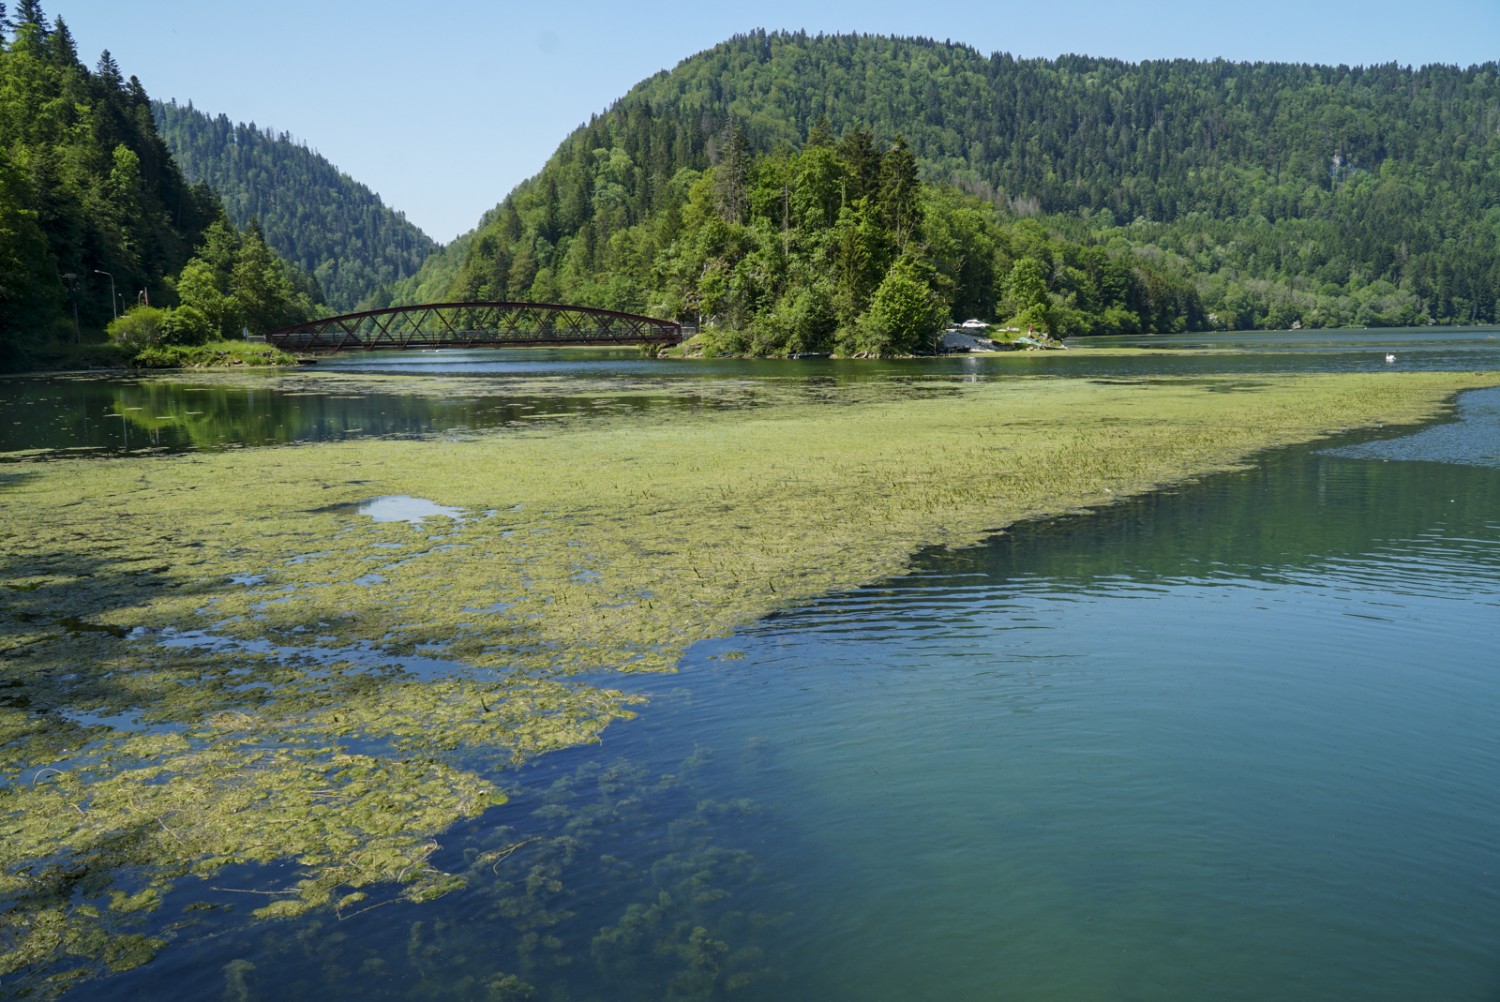 Le lac de retenue de Biaufond fait partie de la réserve naturelle du Parc du Doubs. Photo: Mia Hofmann